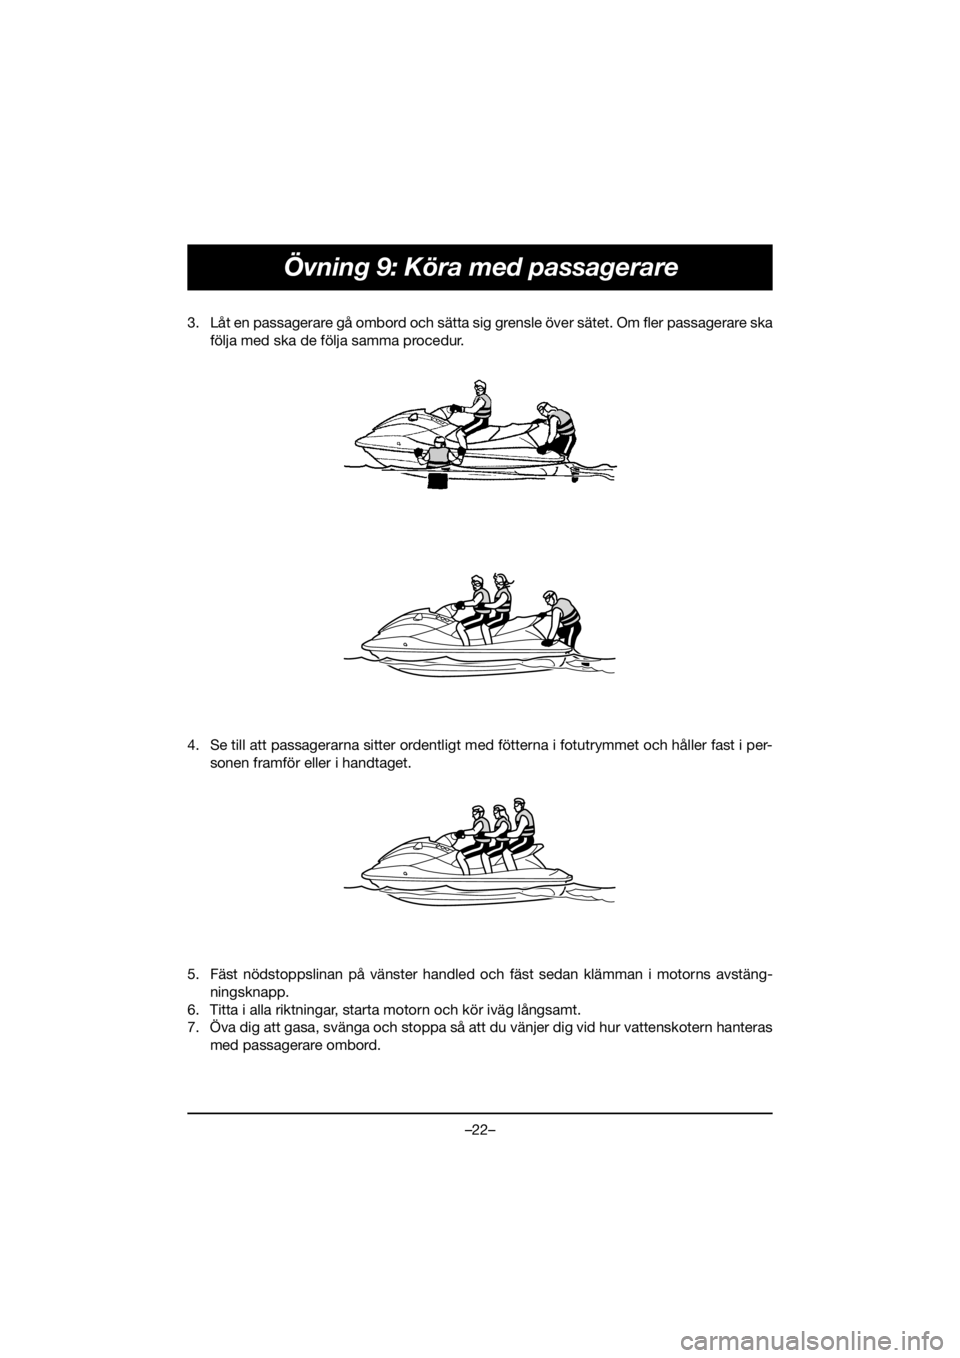 YAMAHA EXR 2020  Owners Manual –22–
Övning 9: Köra med passagerare
3. Låt en passagerare gå ombord och sätta sig grensle över sätet. Om fler passagerare ska
följa med ska de följa samma procedur. 
4. Se till att passag